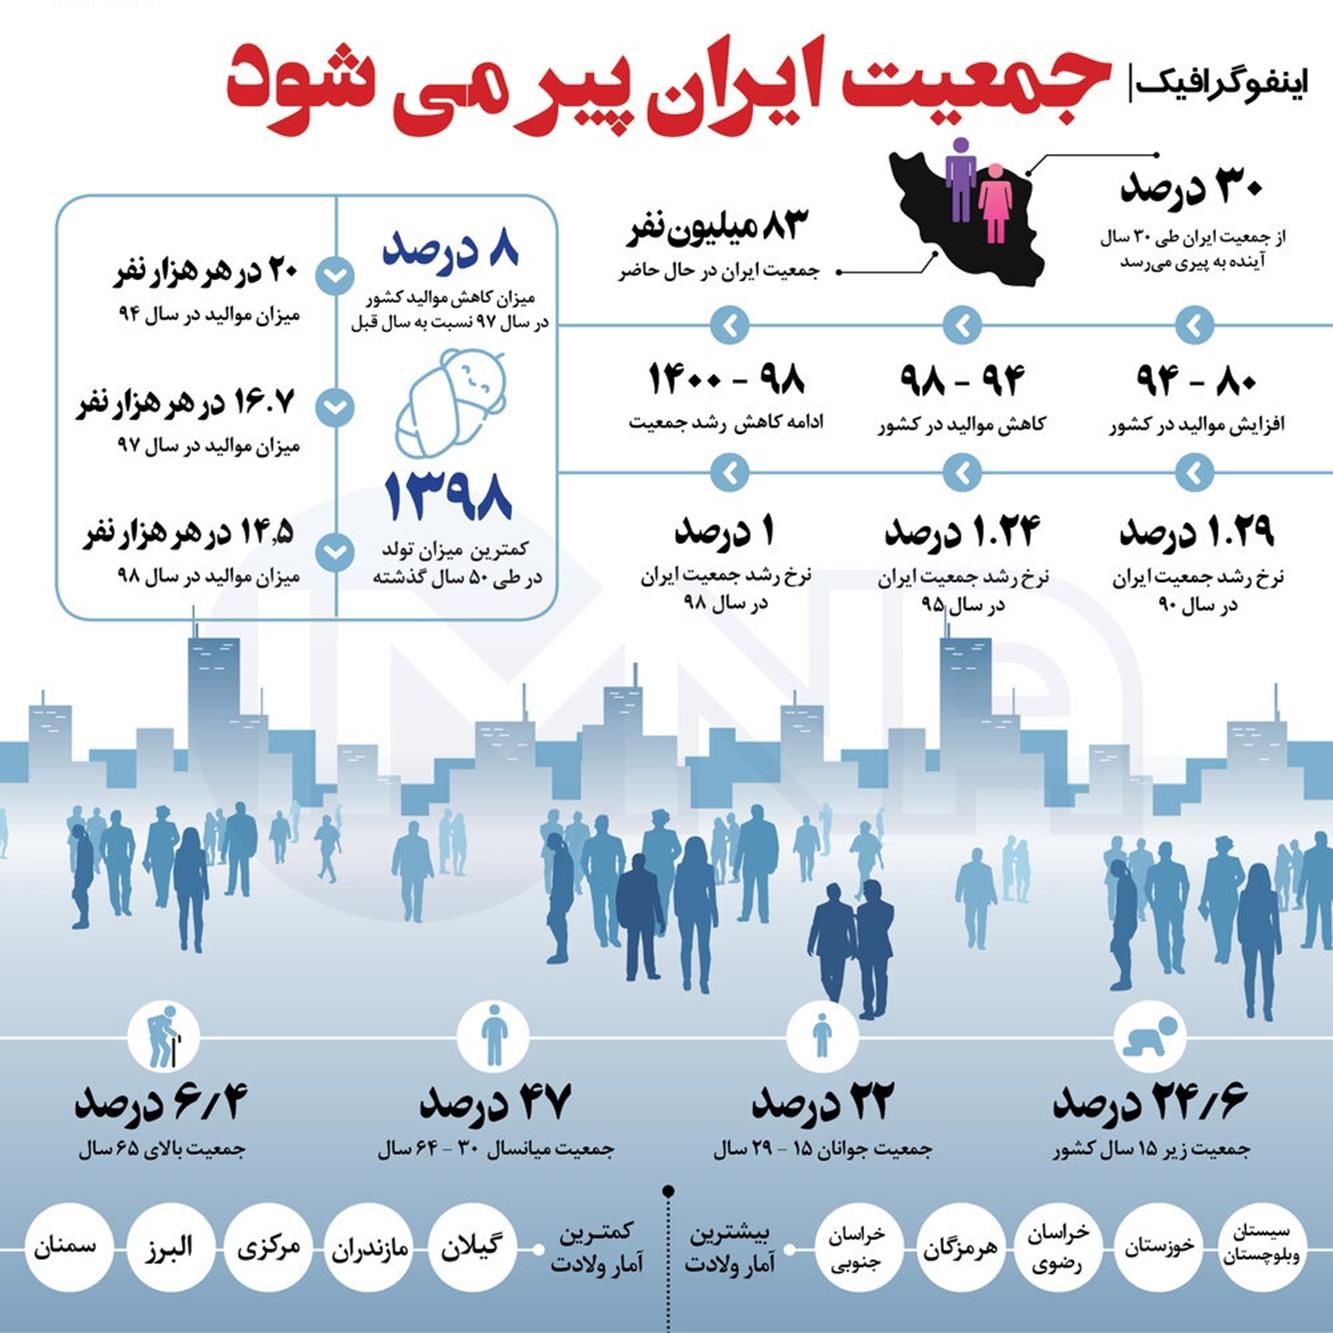 جمعیت ایران پیر می شود + اینفوگرافیک